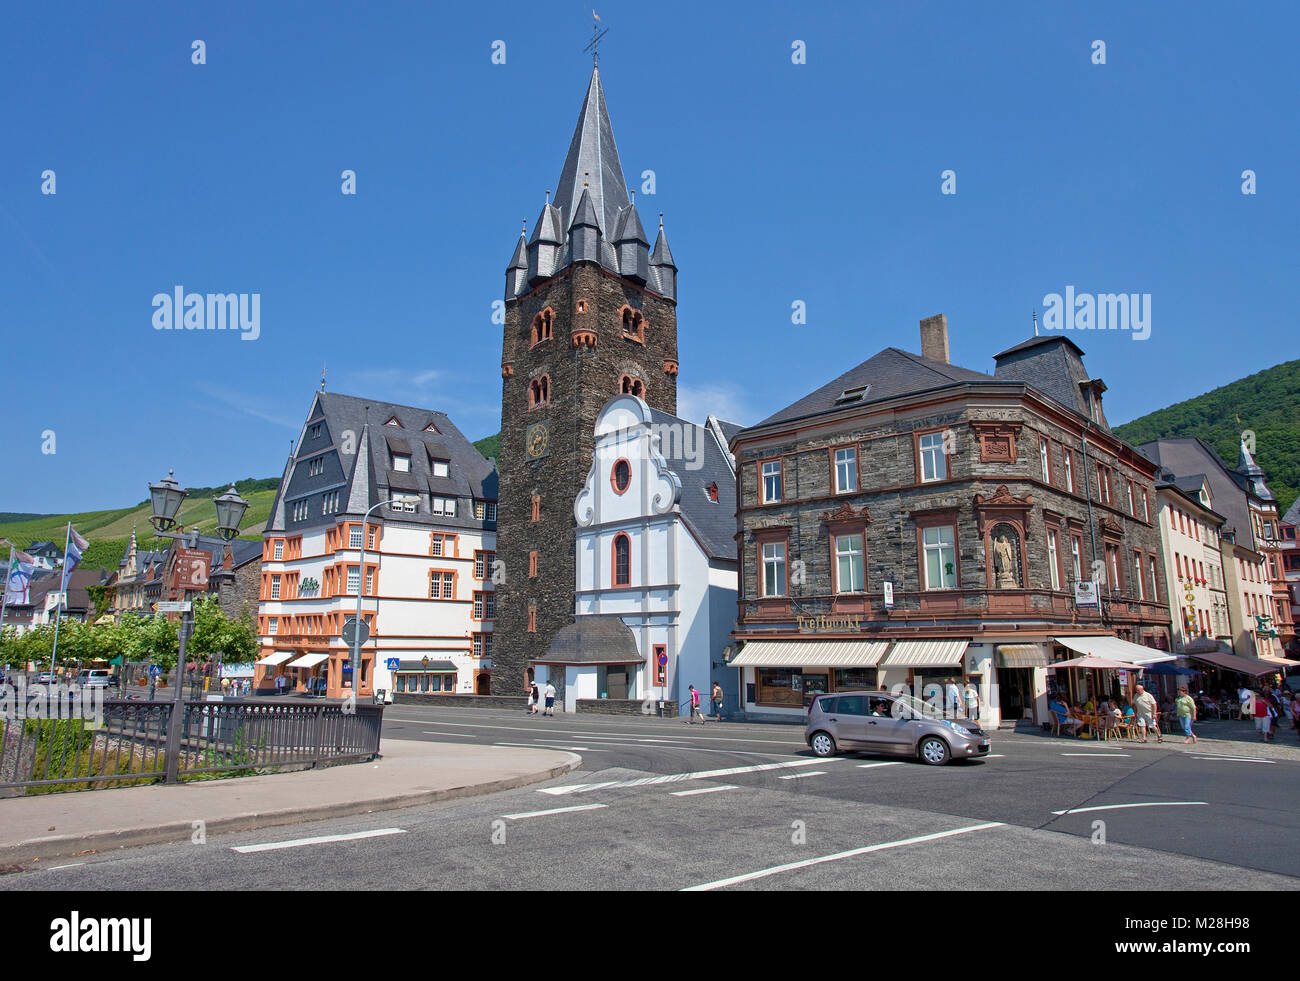 Michael Tower, St. Michael Kirche und ehemaligen Modehaus Astor, Altstadt von Bernkastel-Kues, Mosel, Rheinland-Pfalz, Deutschland, Europa Stockfoto